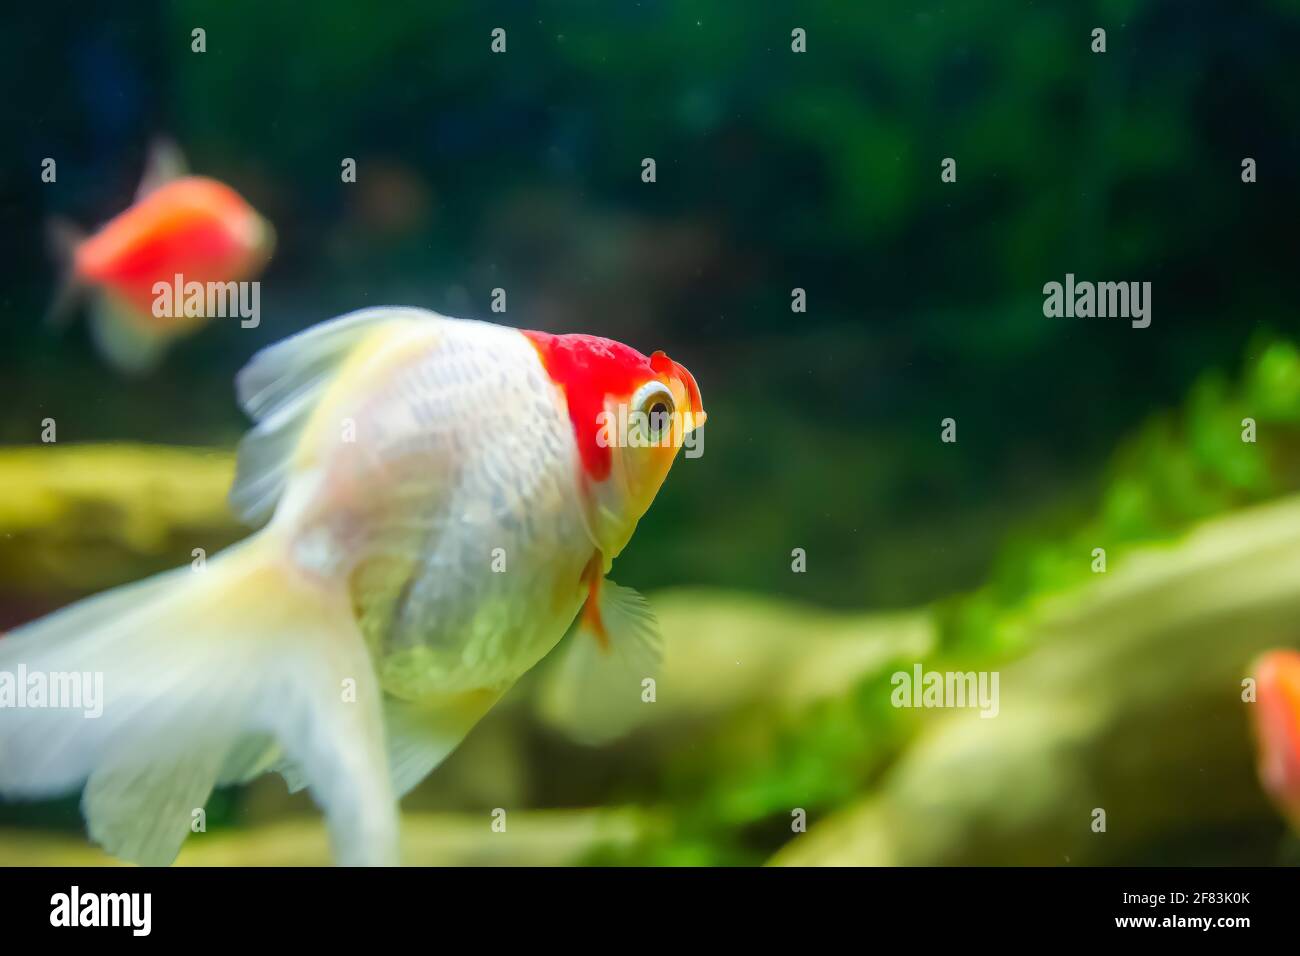 fish in aquarium, aquarium with fish, fish swimming in aquarium Stock Photo